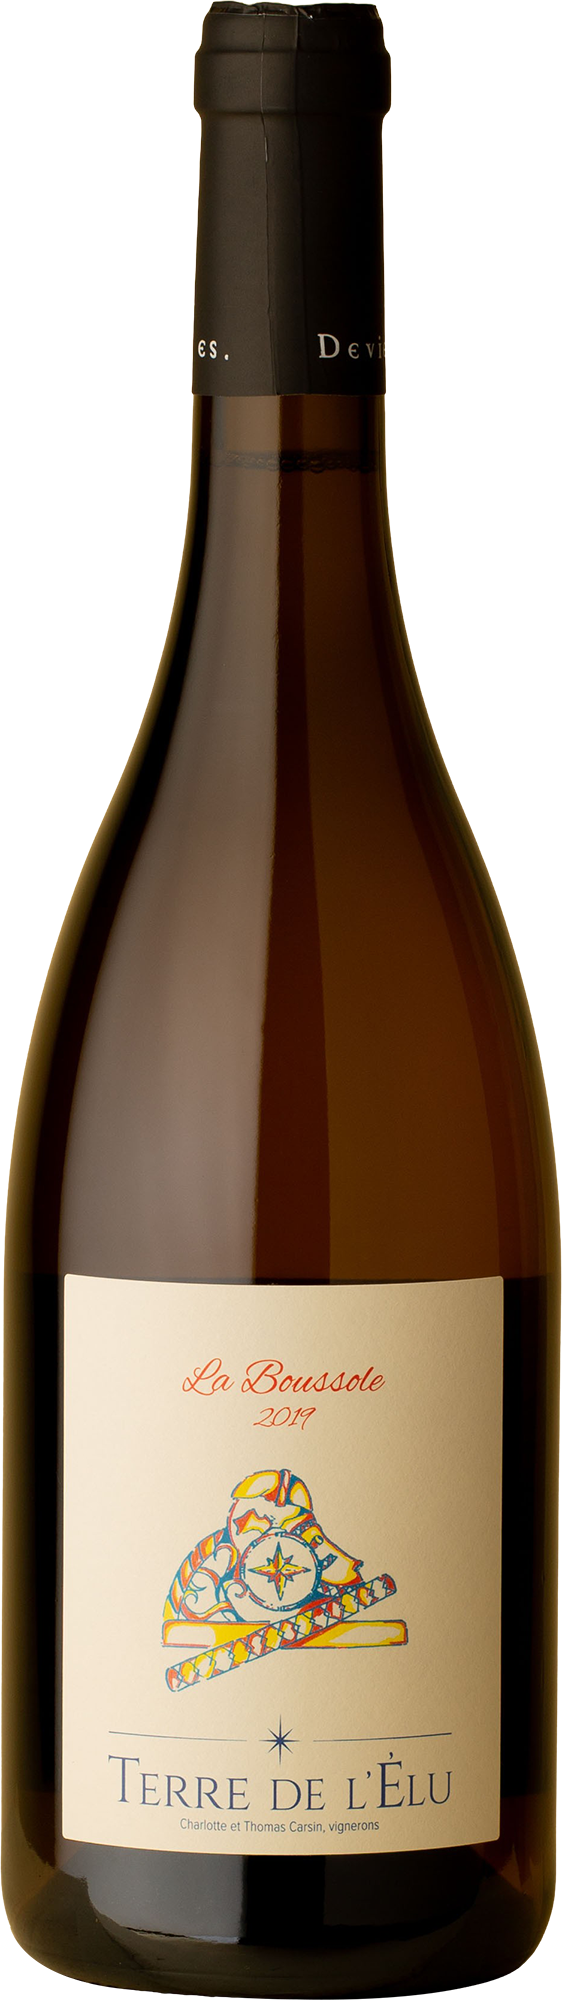 Terre de l'Elu - Boussole Chenin Blanc 2019 White Wine